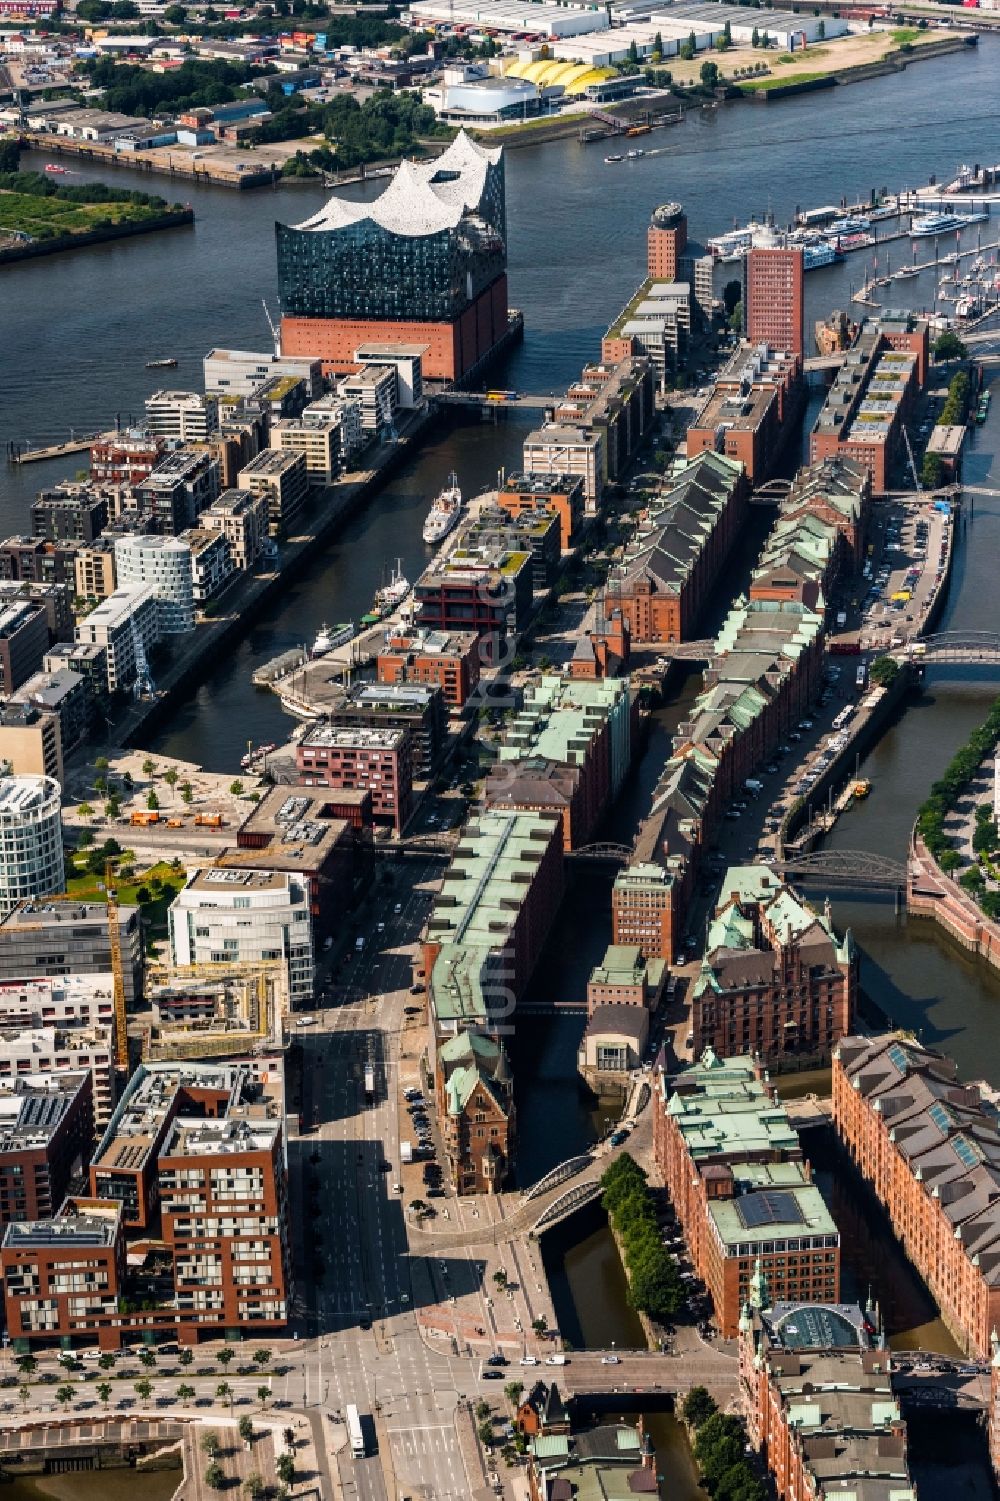 Luftaufnahme Hamburg - Stadtteil Speicherstadt mit Blick auf die Elbphilharmonie im Stadtgebiet in Hamburg, Deutschland